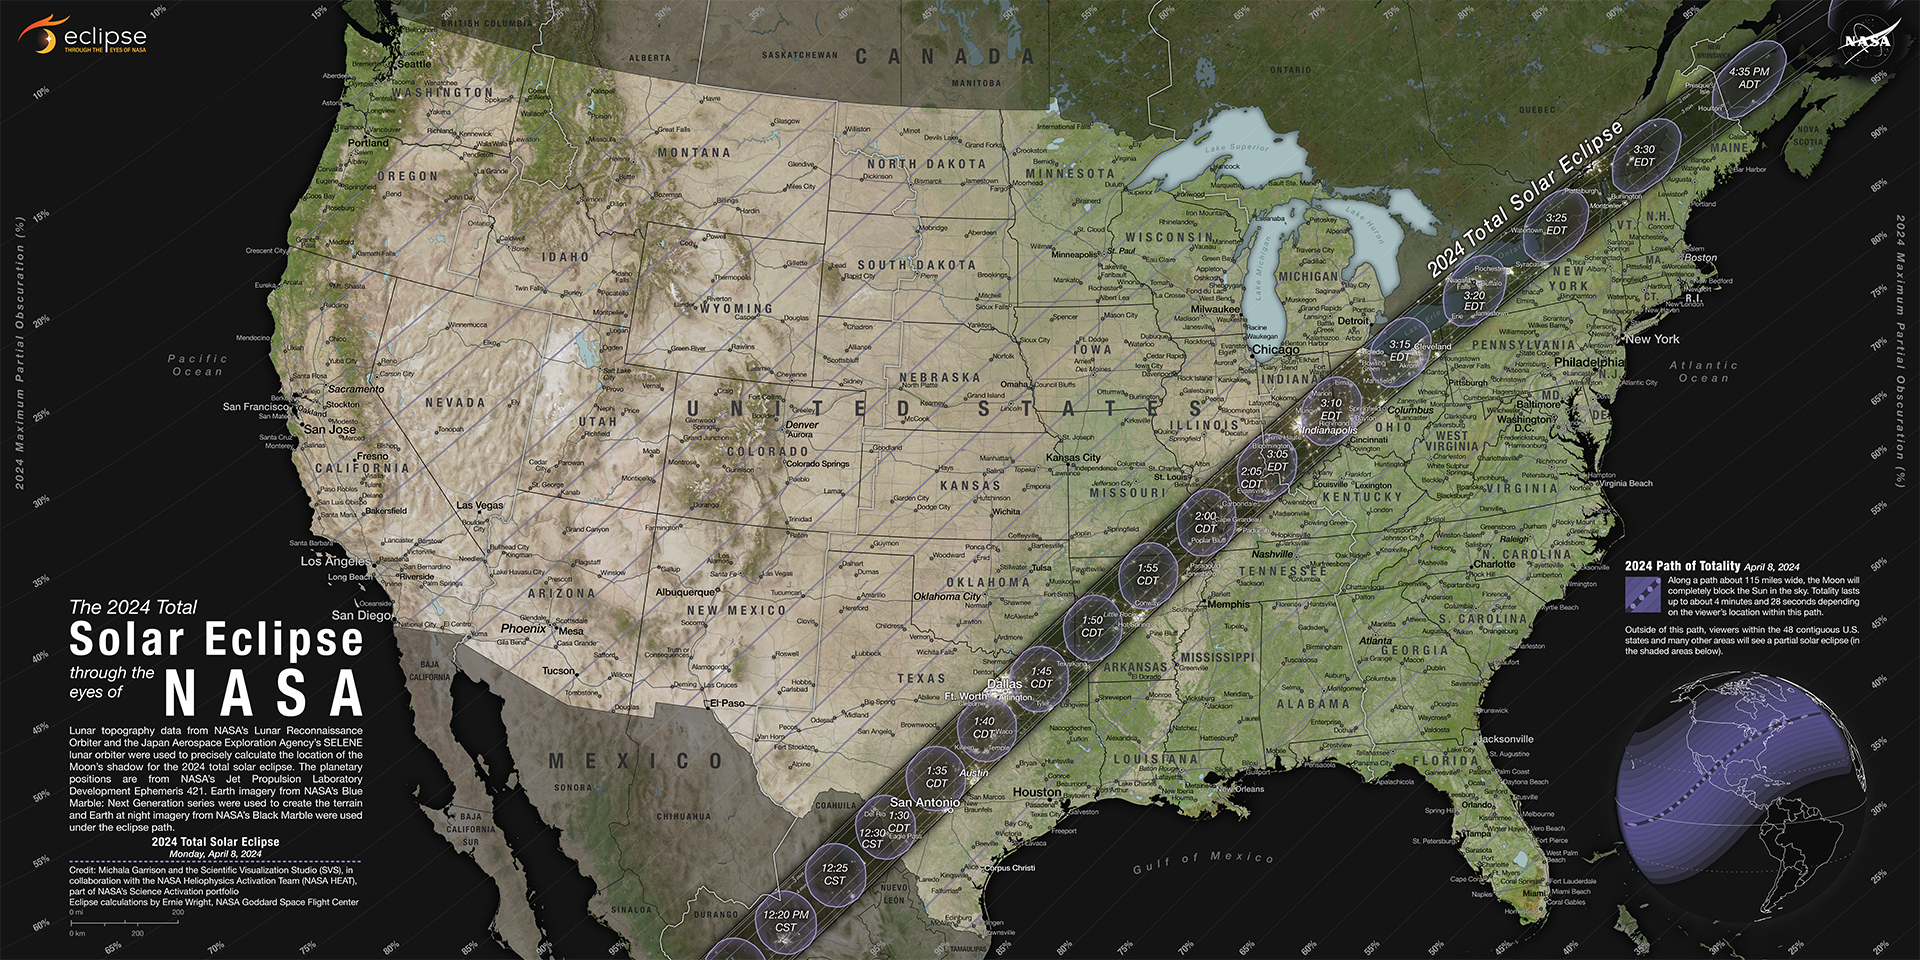 Mapa sąsiadujących Stanów Zjednoczonych pokazuje ścieżkę całkowitego zaćmienia słońca w 2024 r. rozciągającą się w wąskim paśmie od Teksasu do Maine.